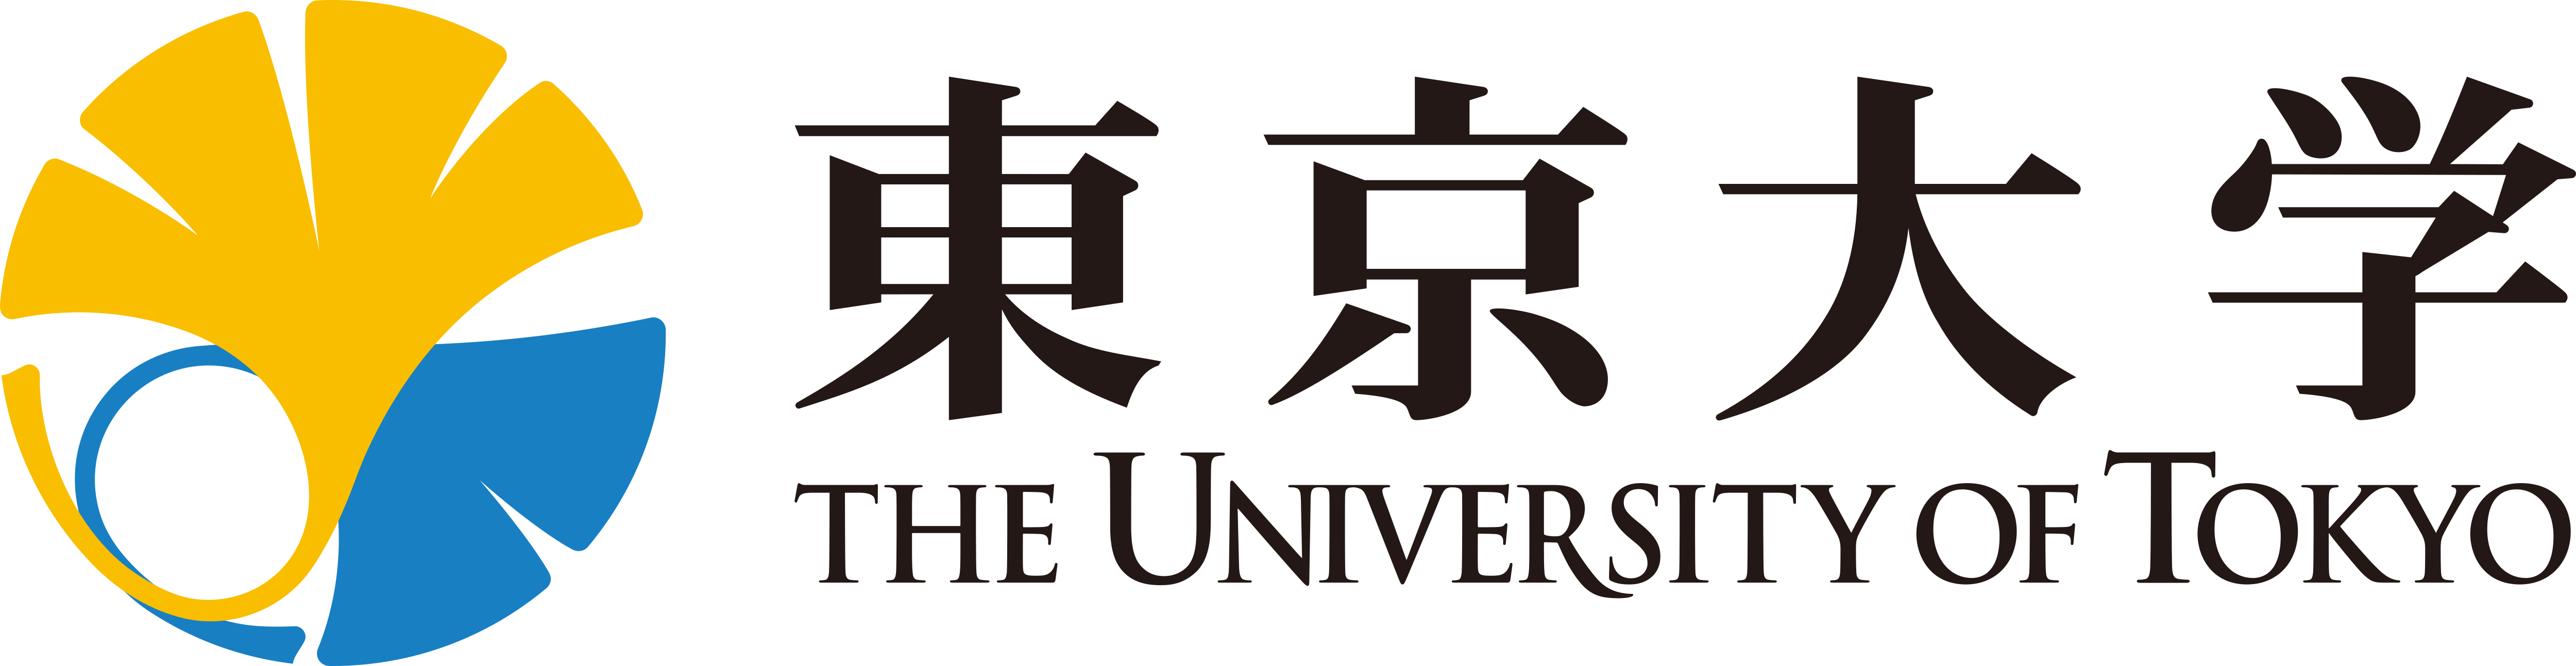 टोक्यो विश्वविद्यालय - लोगो डाउनलोड करें